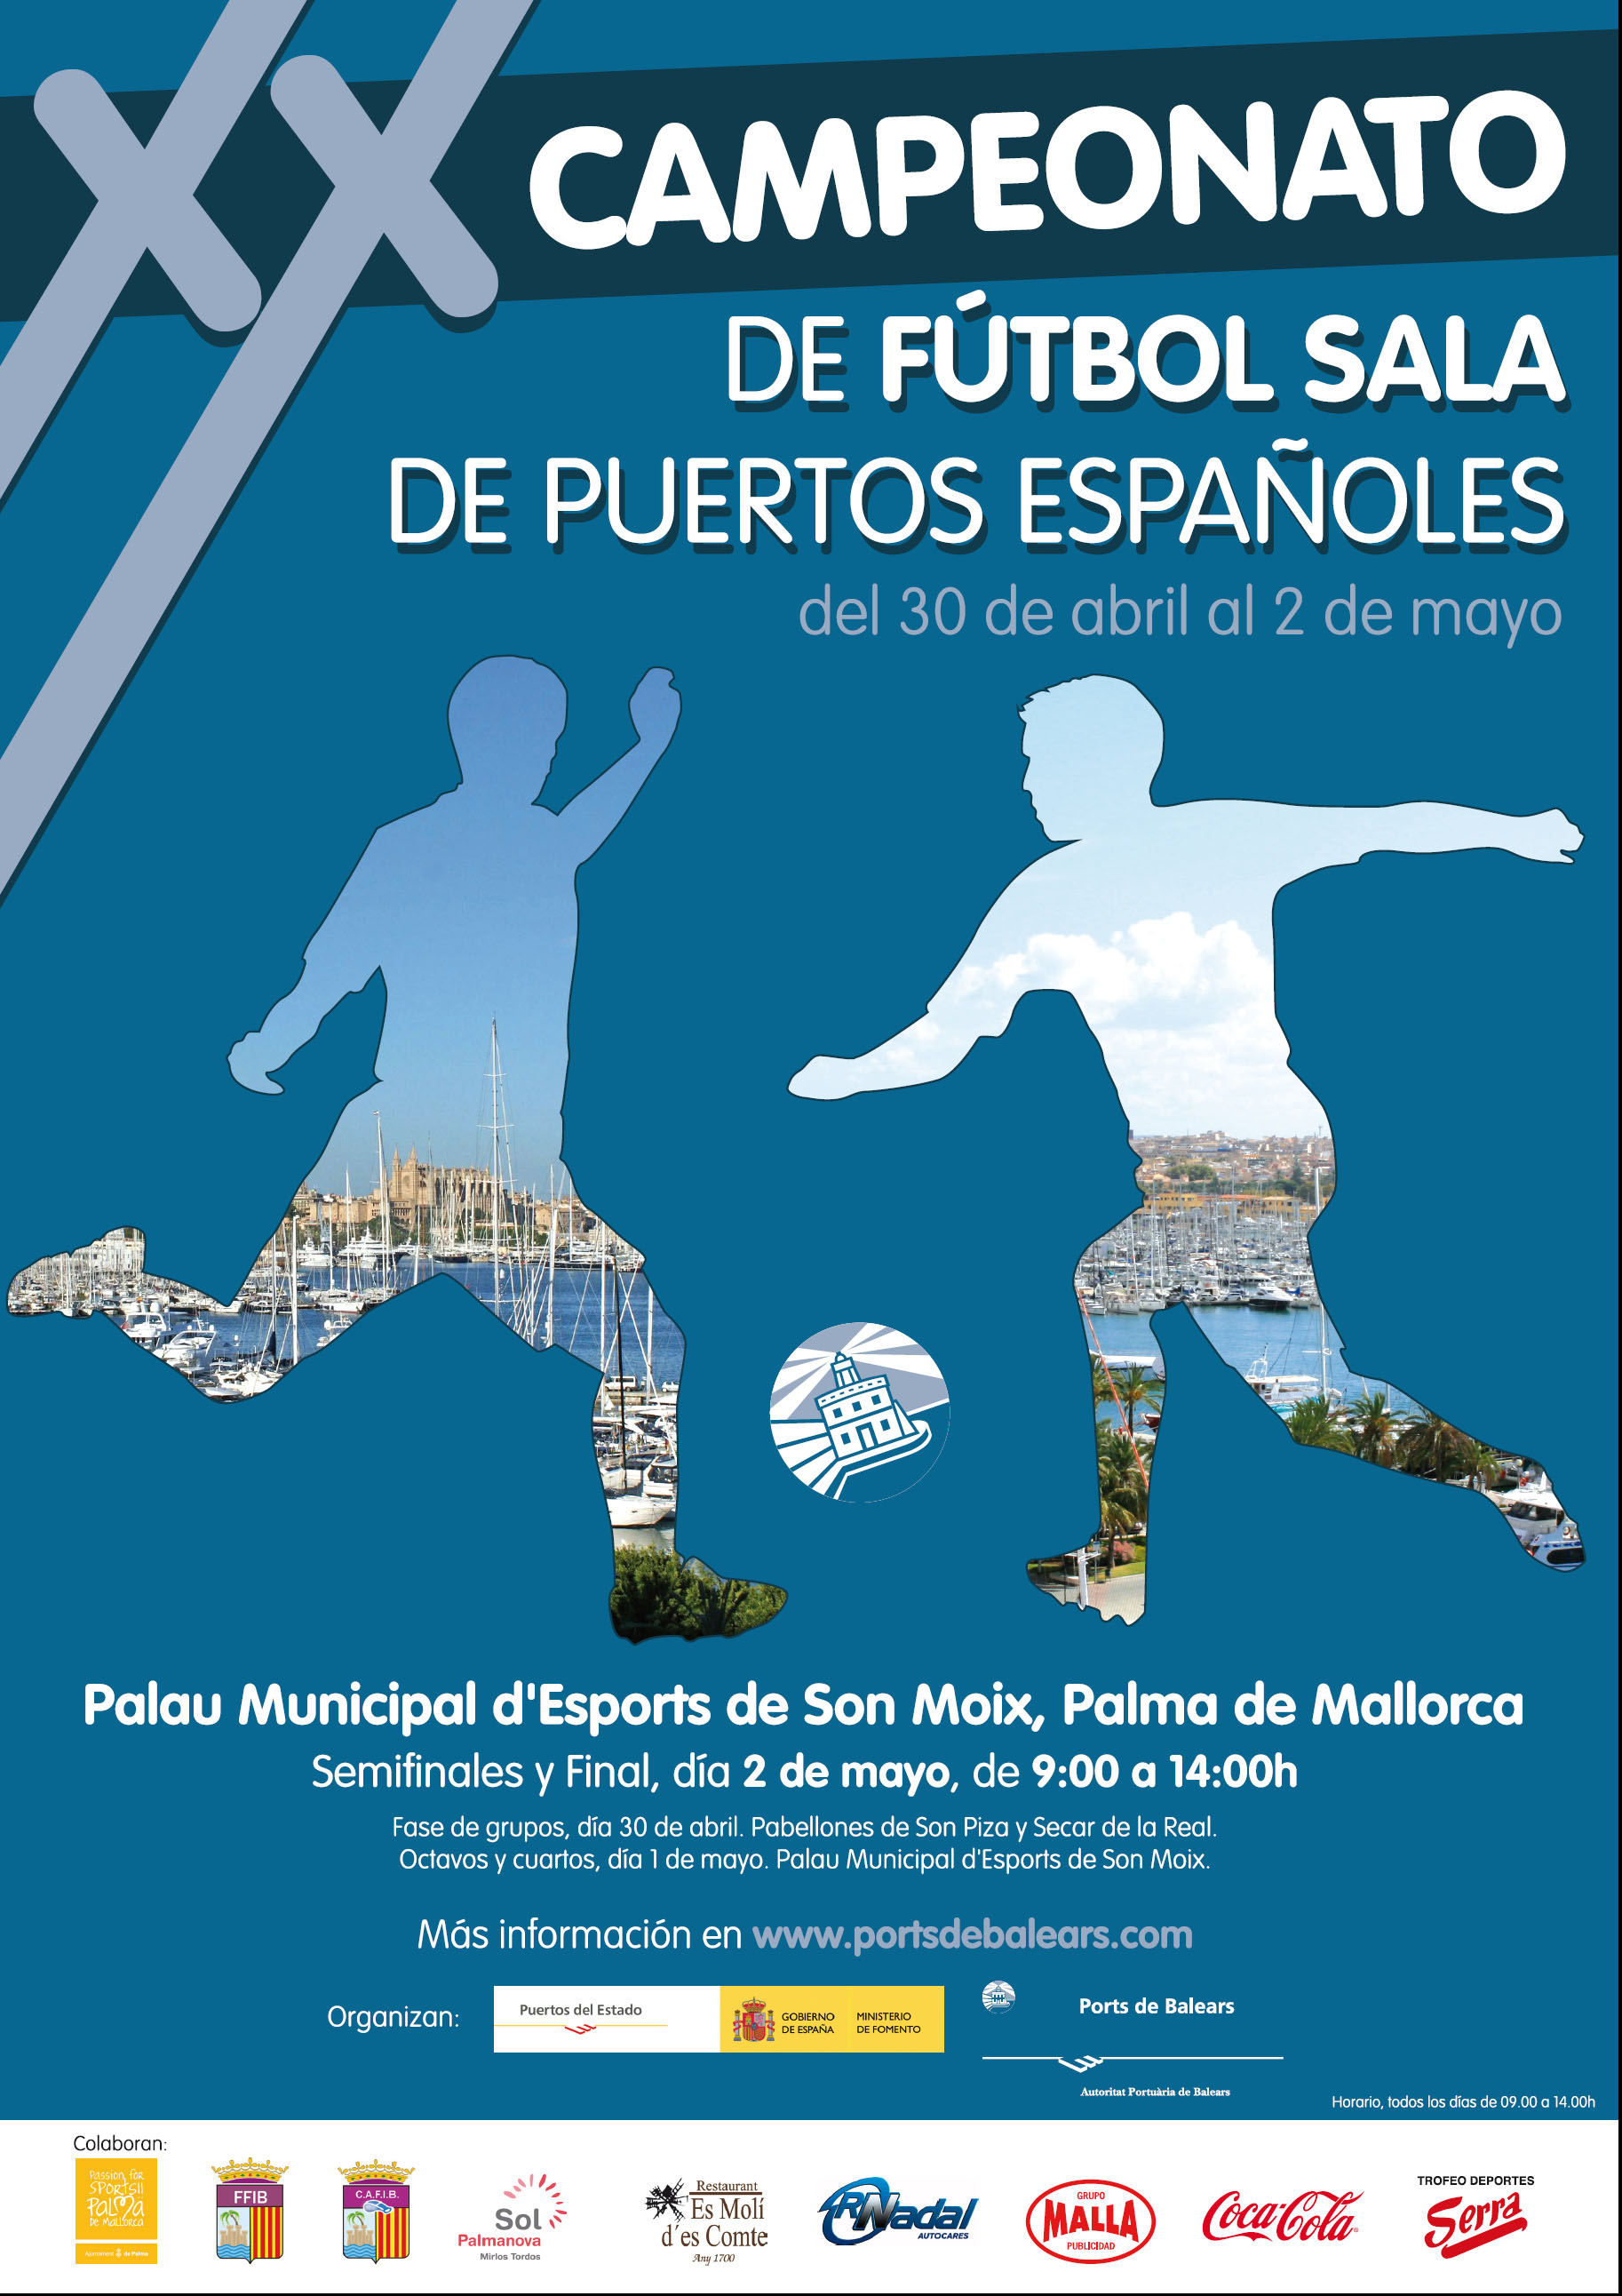 La APB organiza el XX Campeonato de Fútbol Sala de Puertos Españoles